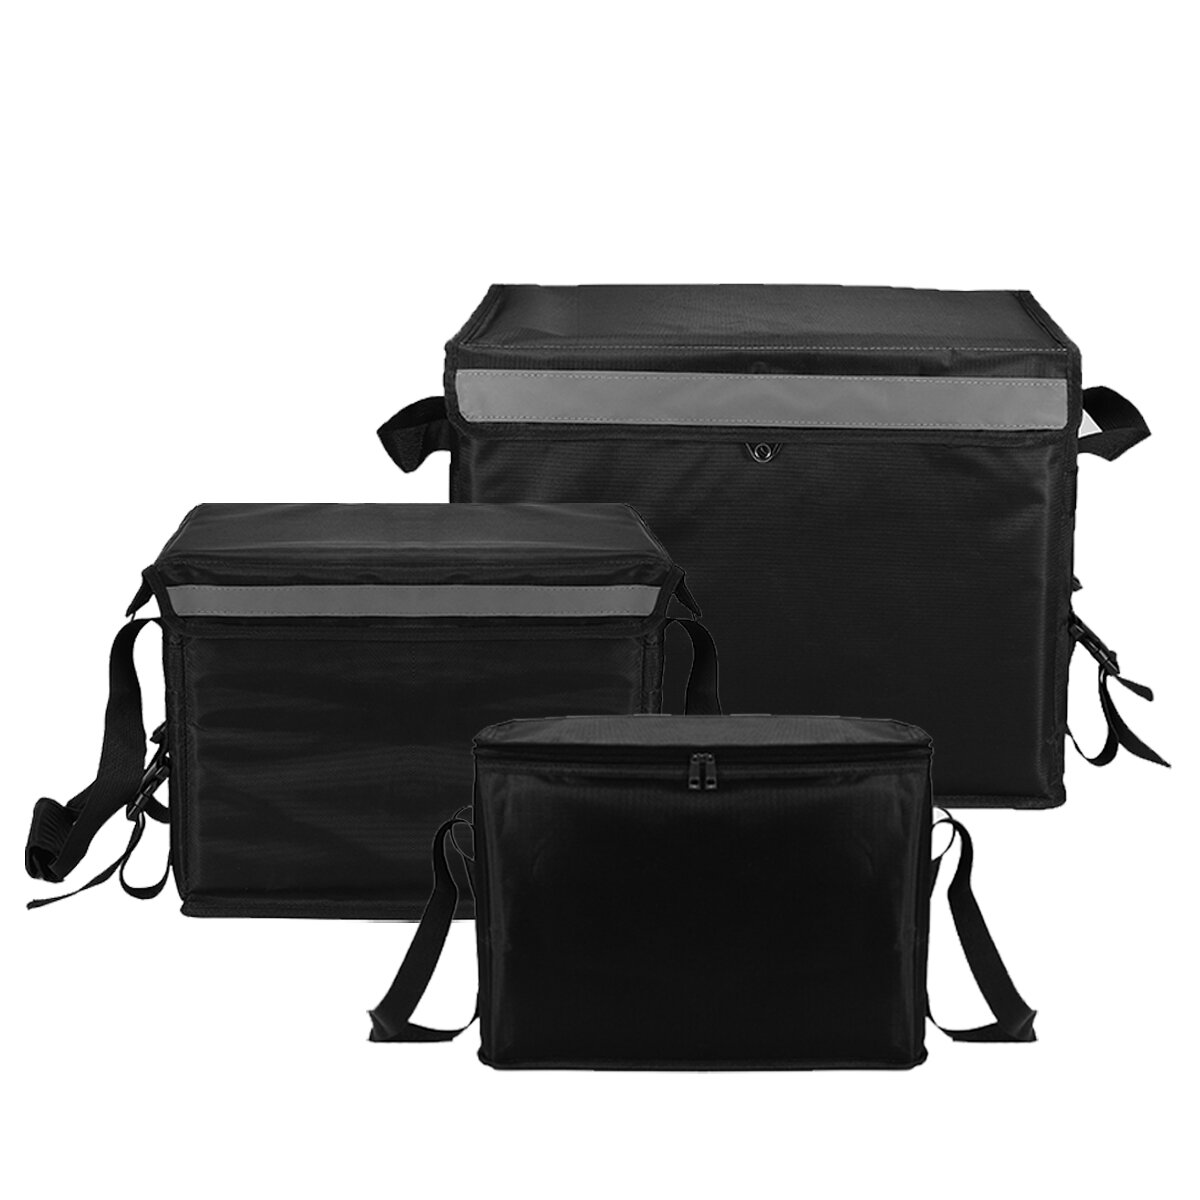 Ételhordó táska 23/30/62 literes hőszigetelt tárolóval, meleg/hideg táskával, kültéri kempinghez, piknikhez, BBQ-hoz belső tartóval.